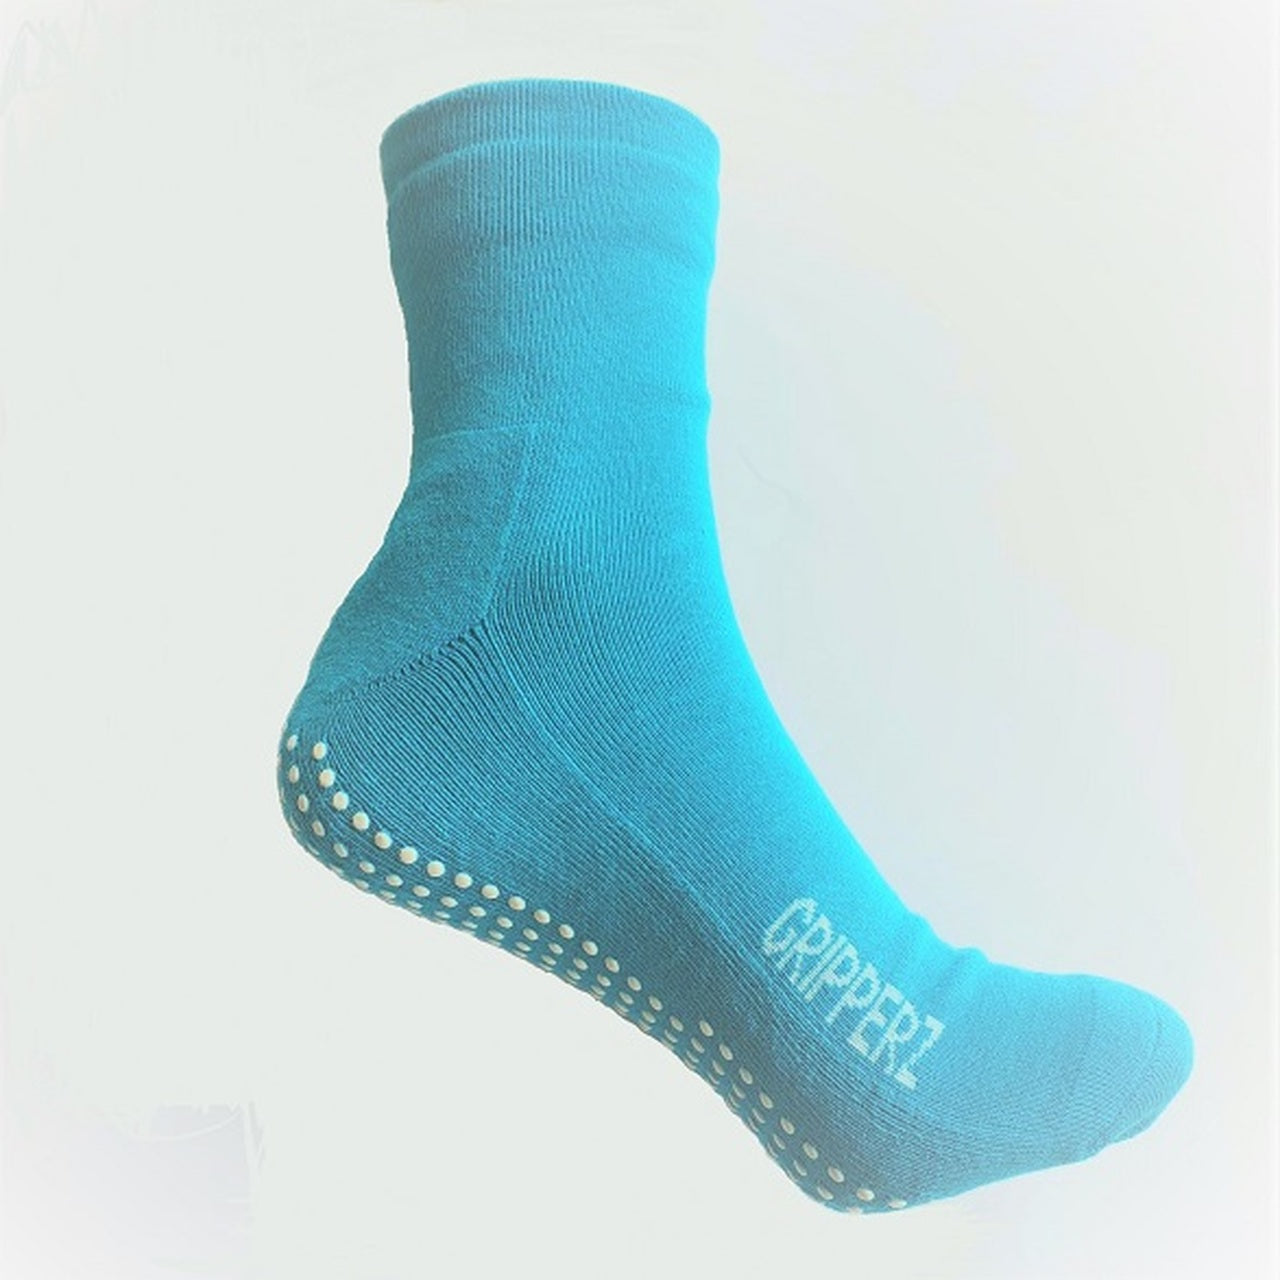 Maxi Hospital Non-Slip Socks in Teal